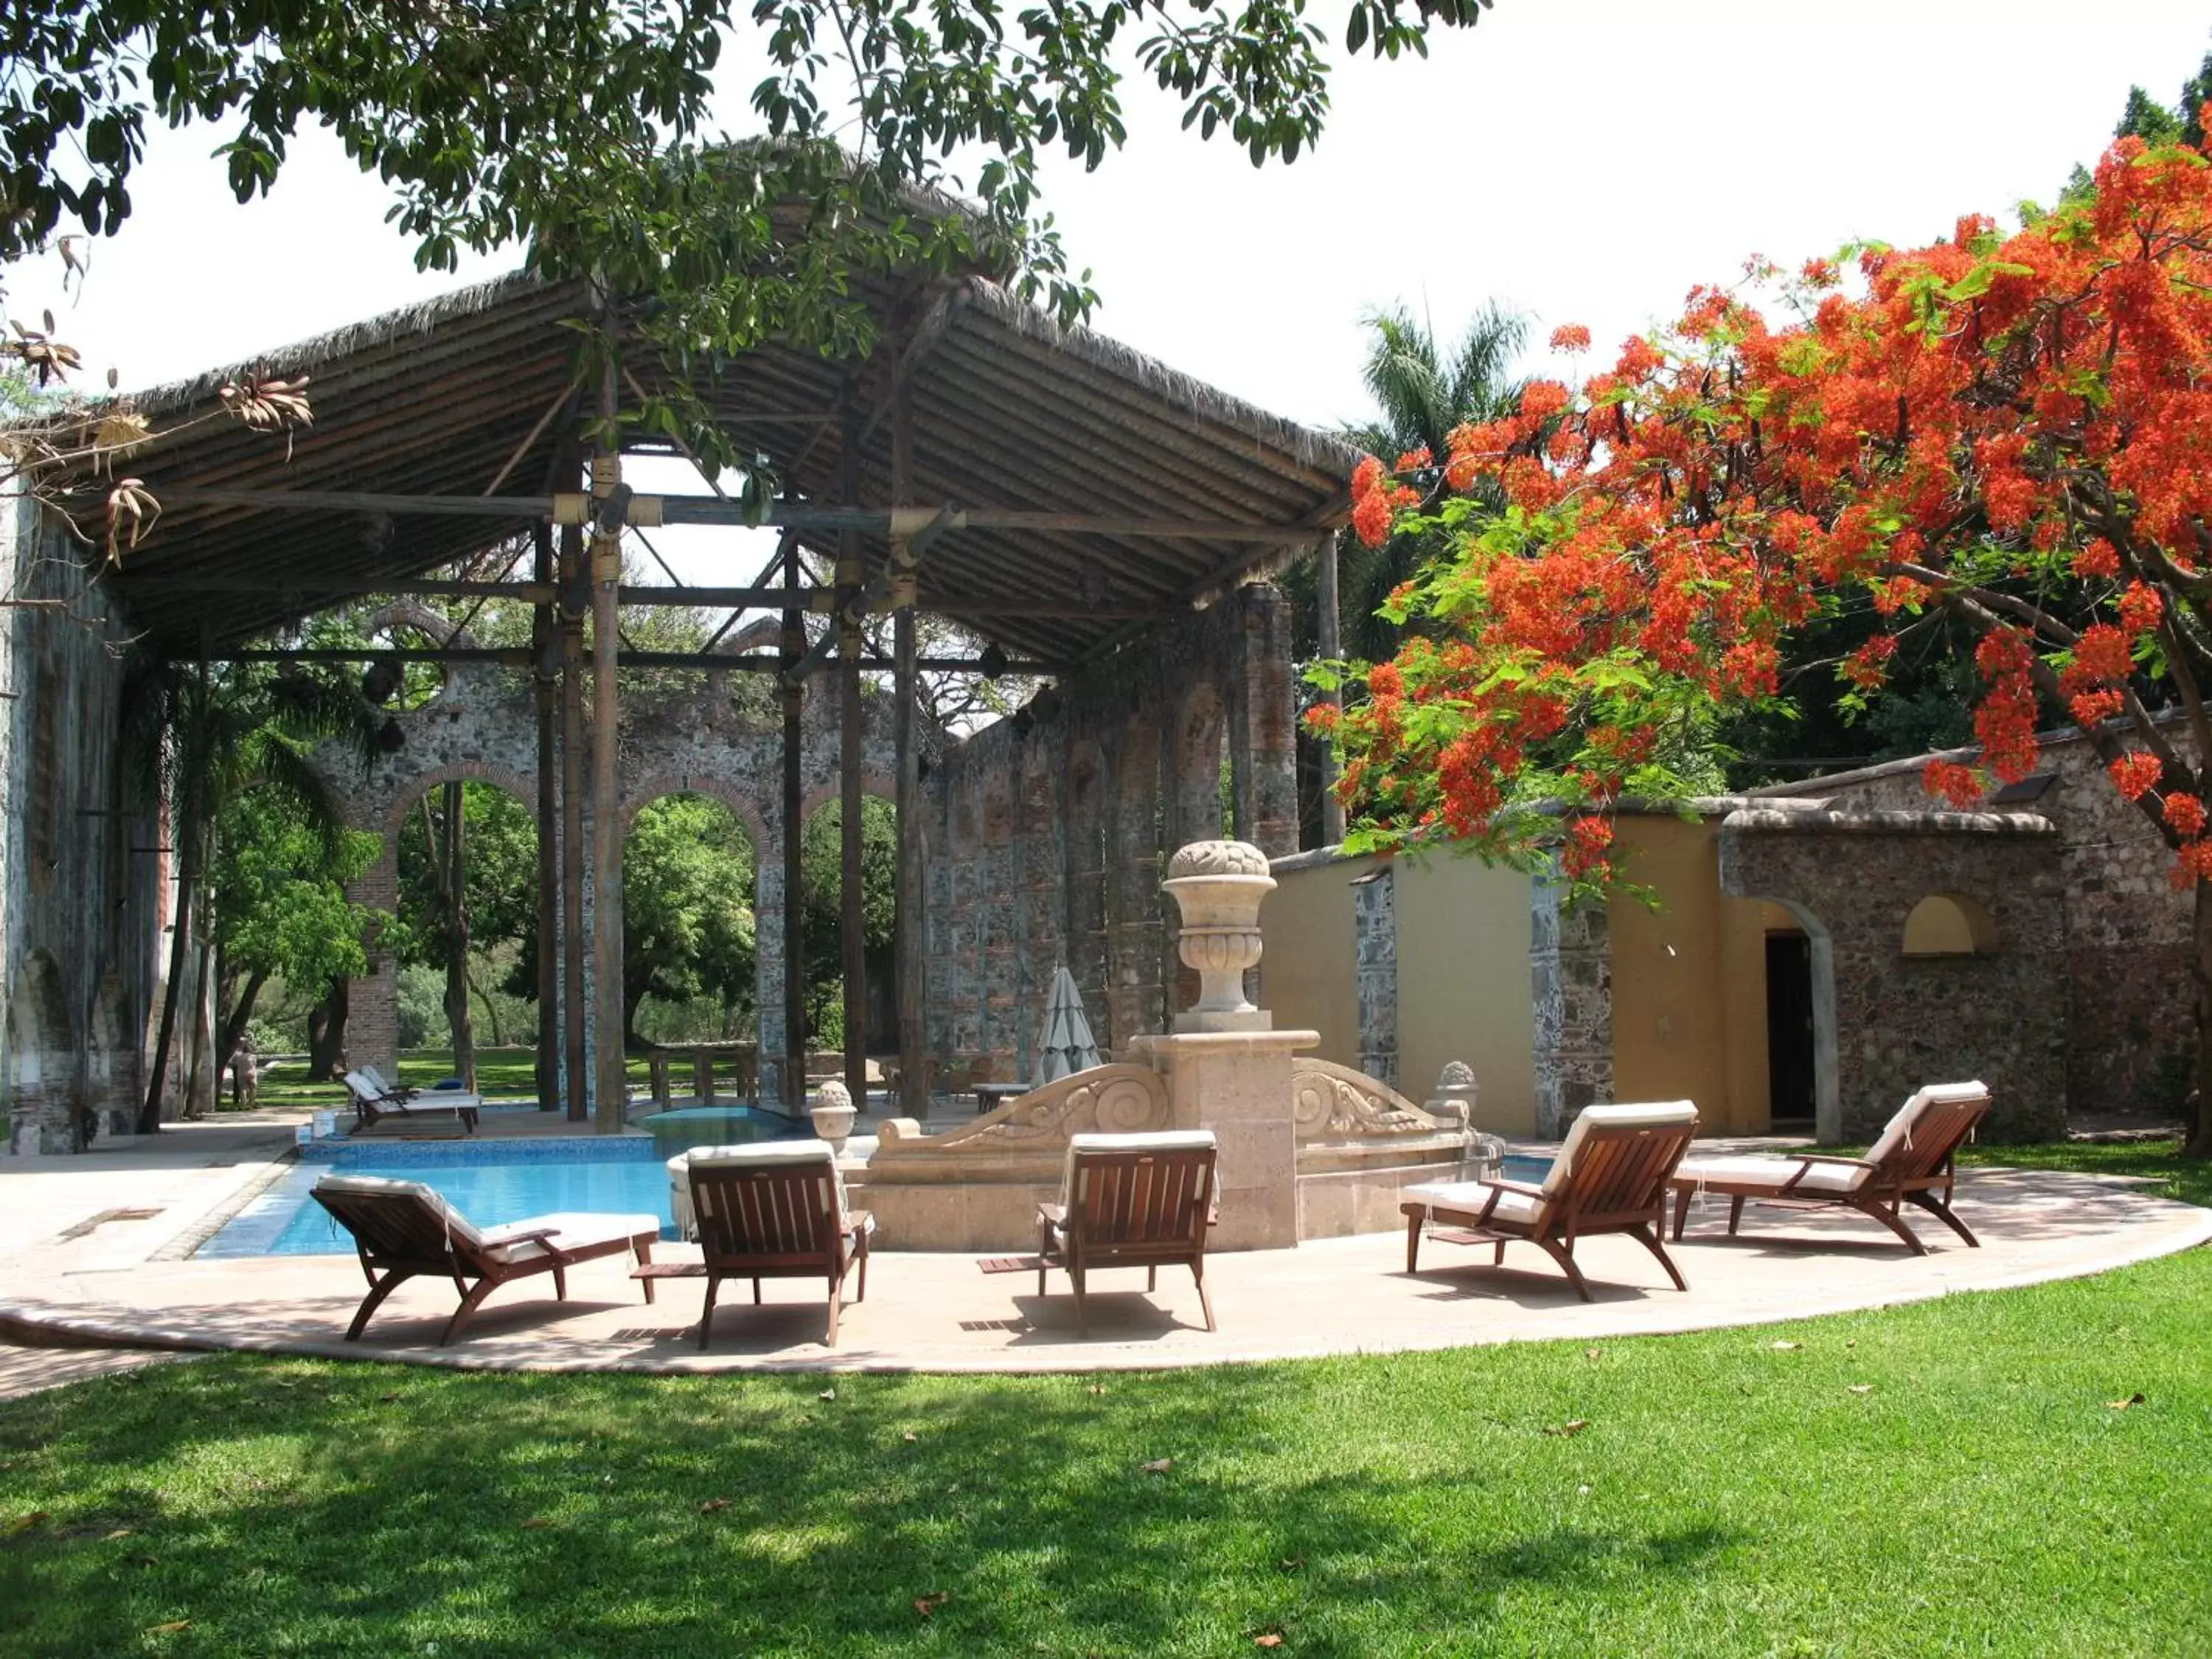 Swimming Pool in Fiesta Americana Hacienda San Antonio El Puente Cuernavaca